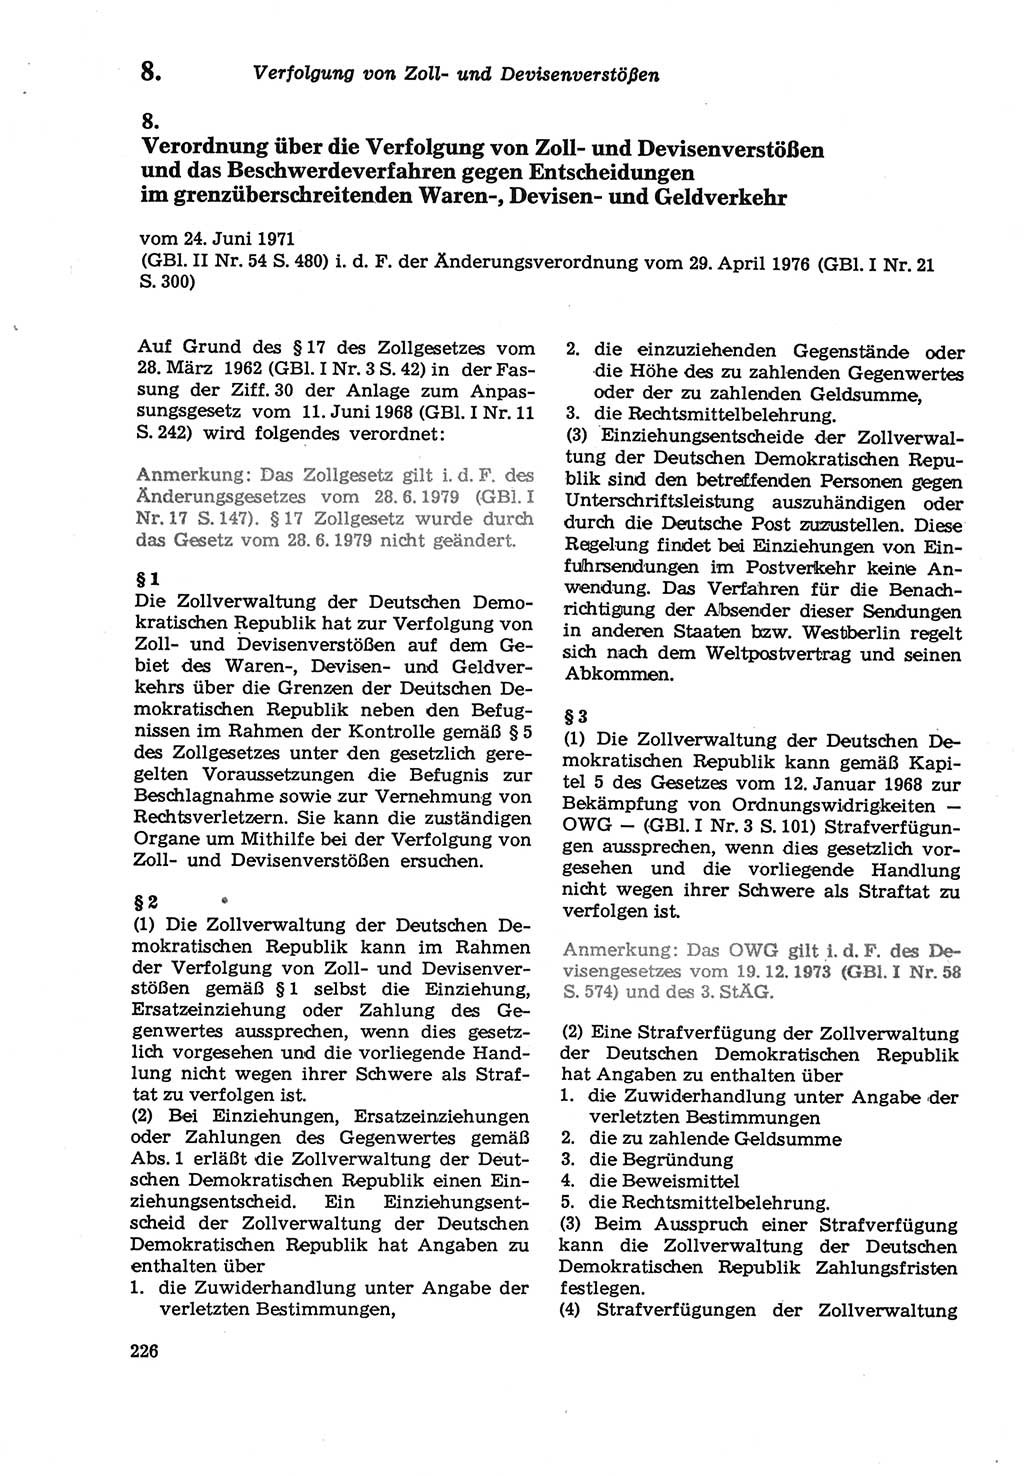 Strafprozeßordnung (StPO) der Deutschen Demokratischen Republik (DDR) sowie angrenzende Gesetze und Bestimmungen 1979, Seite 226 (StPO DDR Ges. Best. 1979, S. 226)